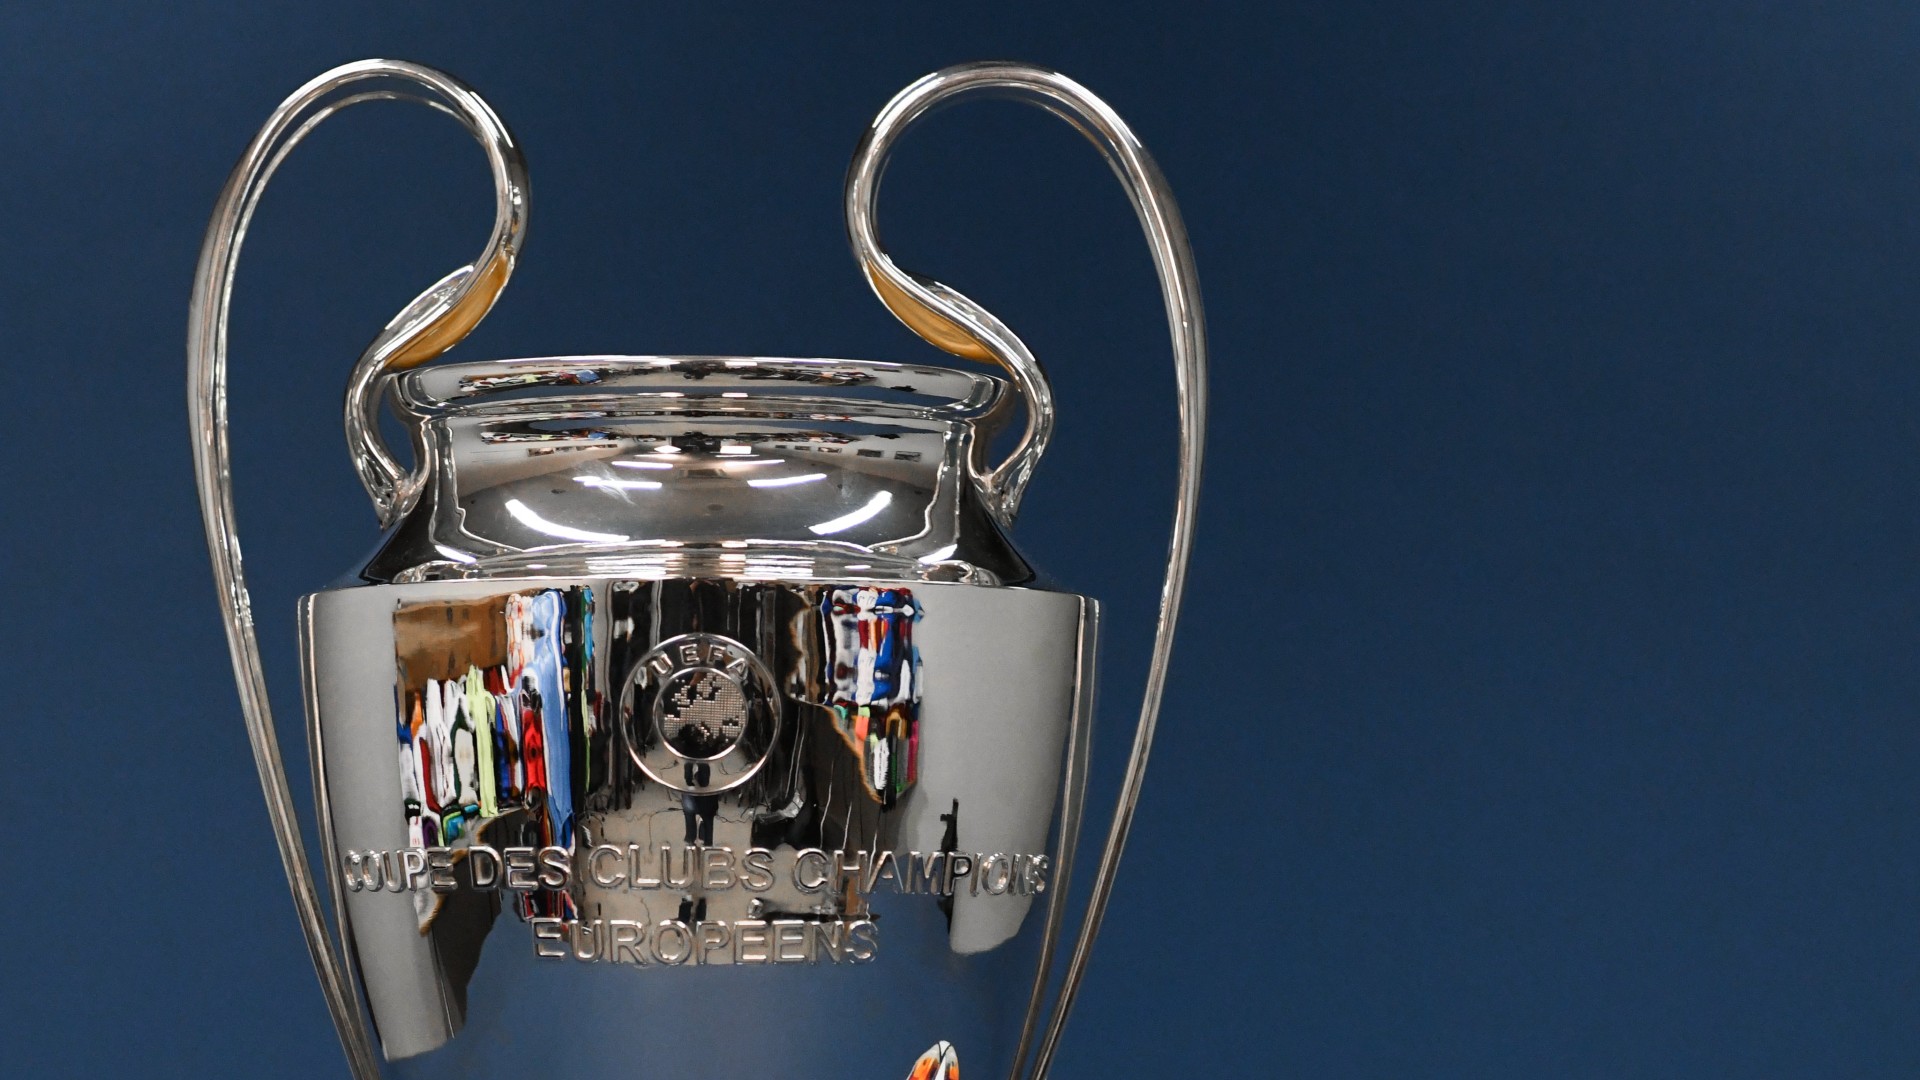 UEFA Champions League Winners List - All UEFA finalists and UEFA League  Winners Table